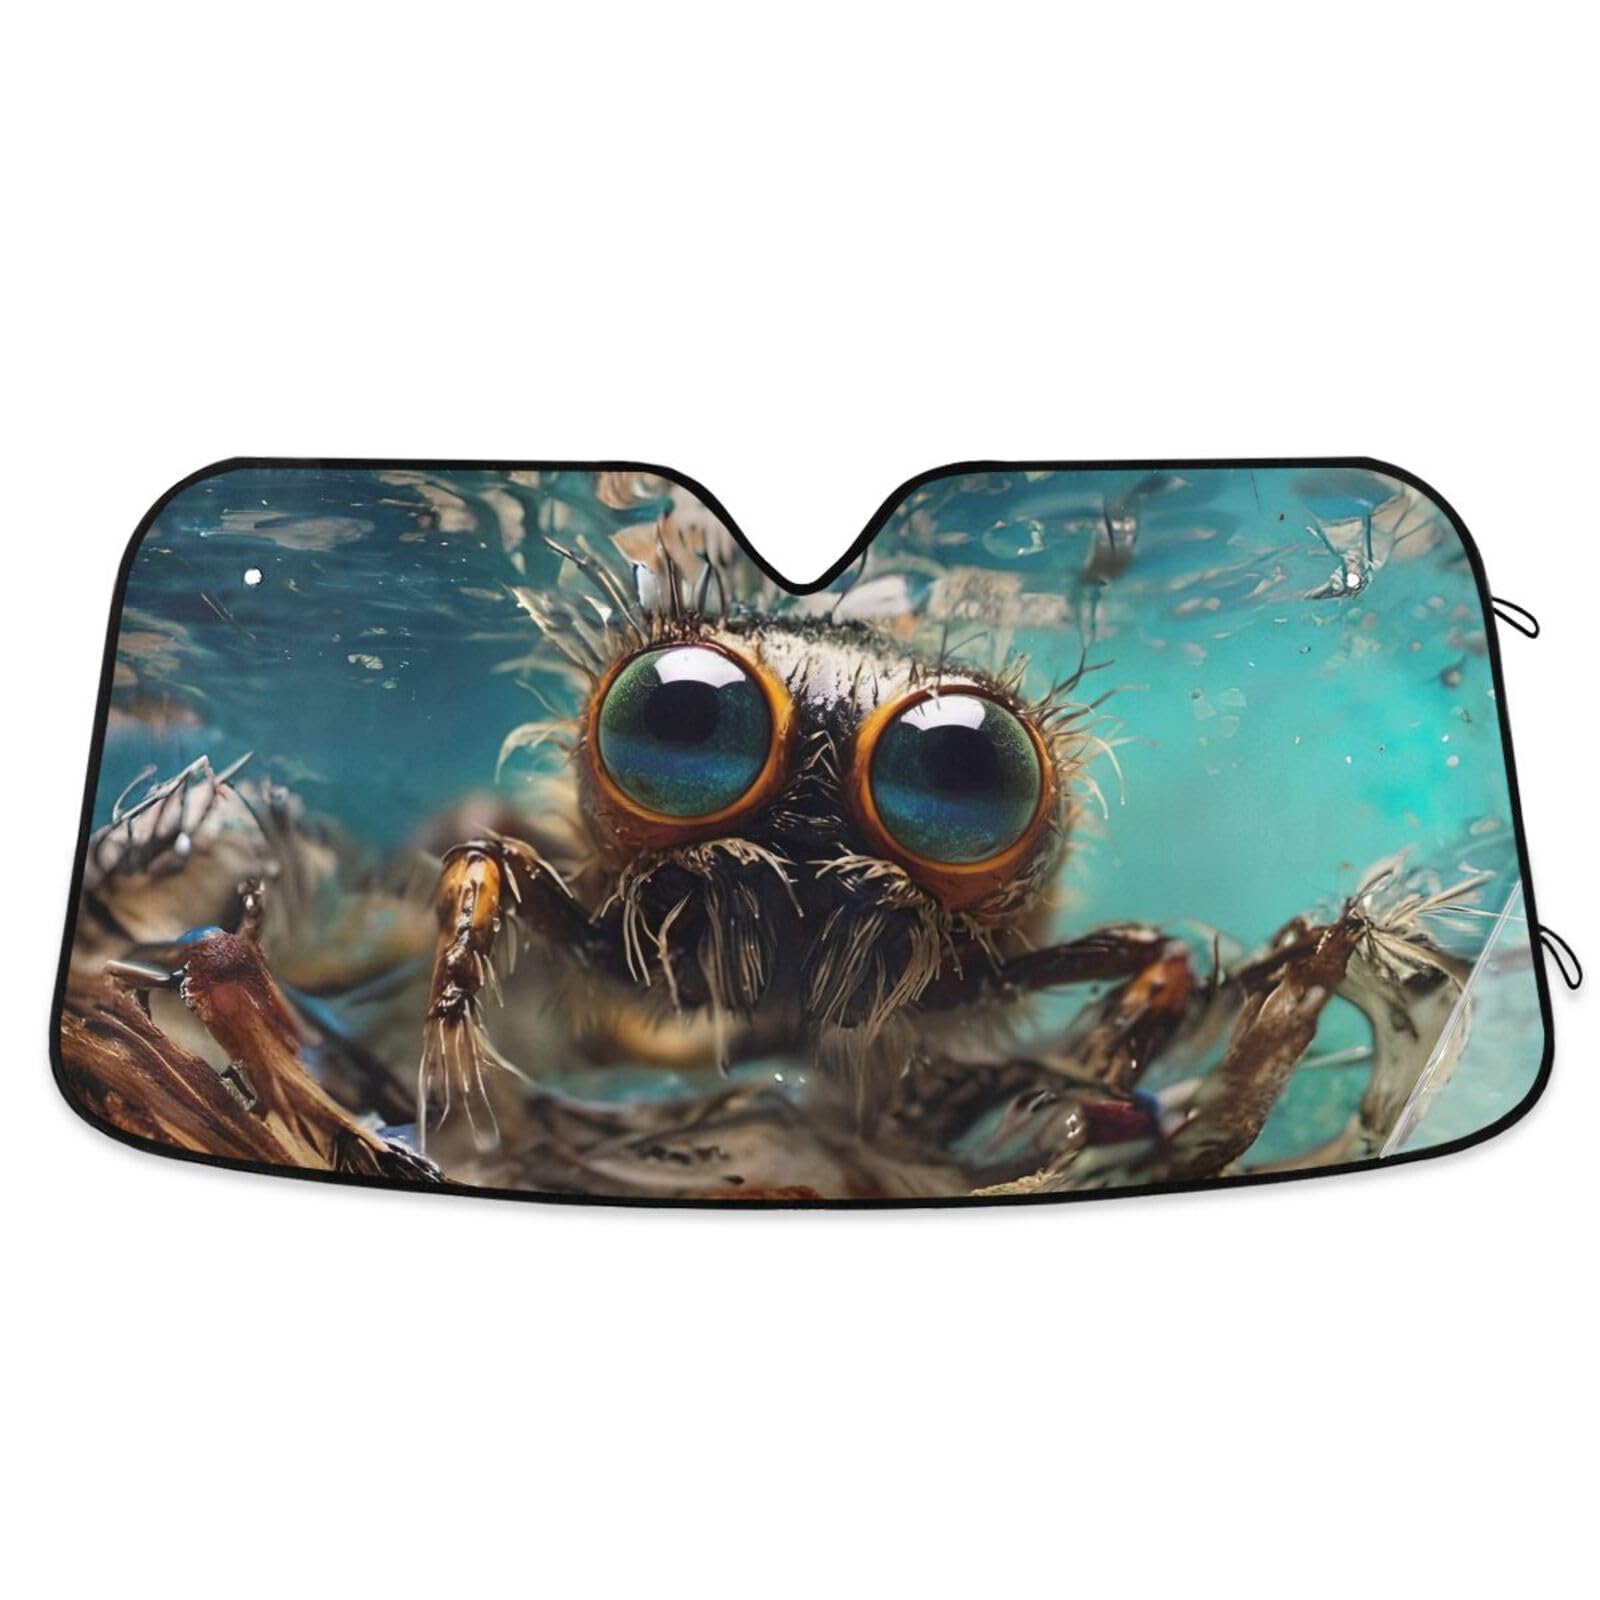 ODAWA Auto-Sonnenschutz für Windschutzscheibe, große Augen, Krabbe, unter Wasser, faltbar, schützt vor UV-Strahlen, Hitzeschutz, 140 x 70 cm von ODAWA